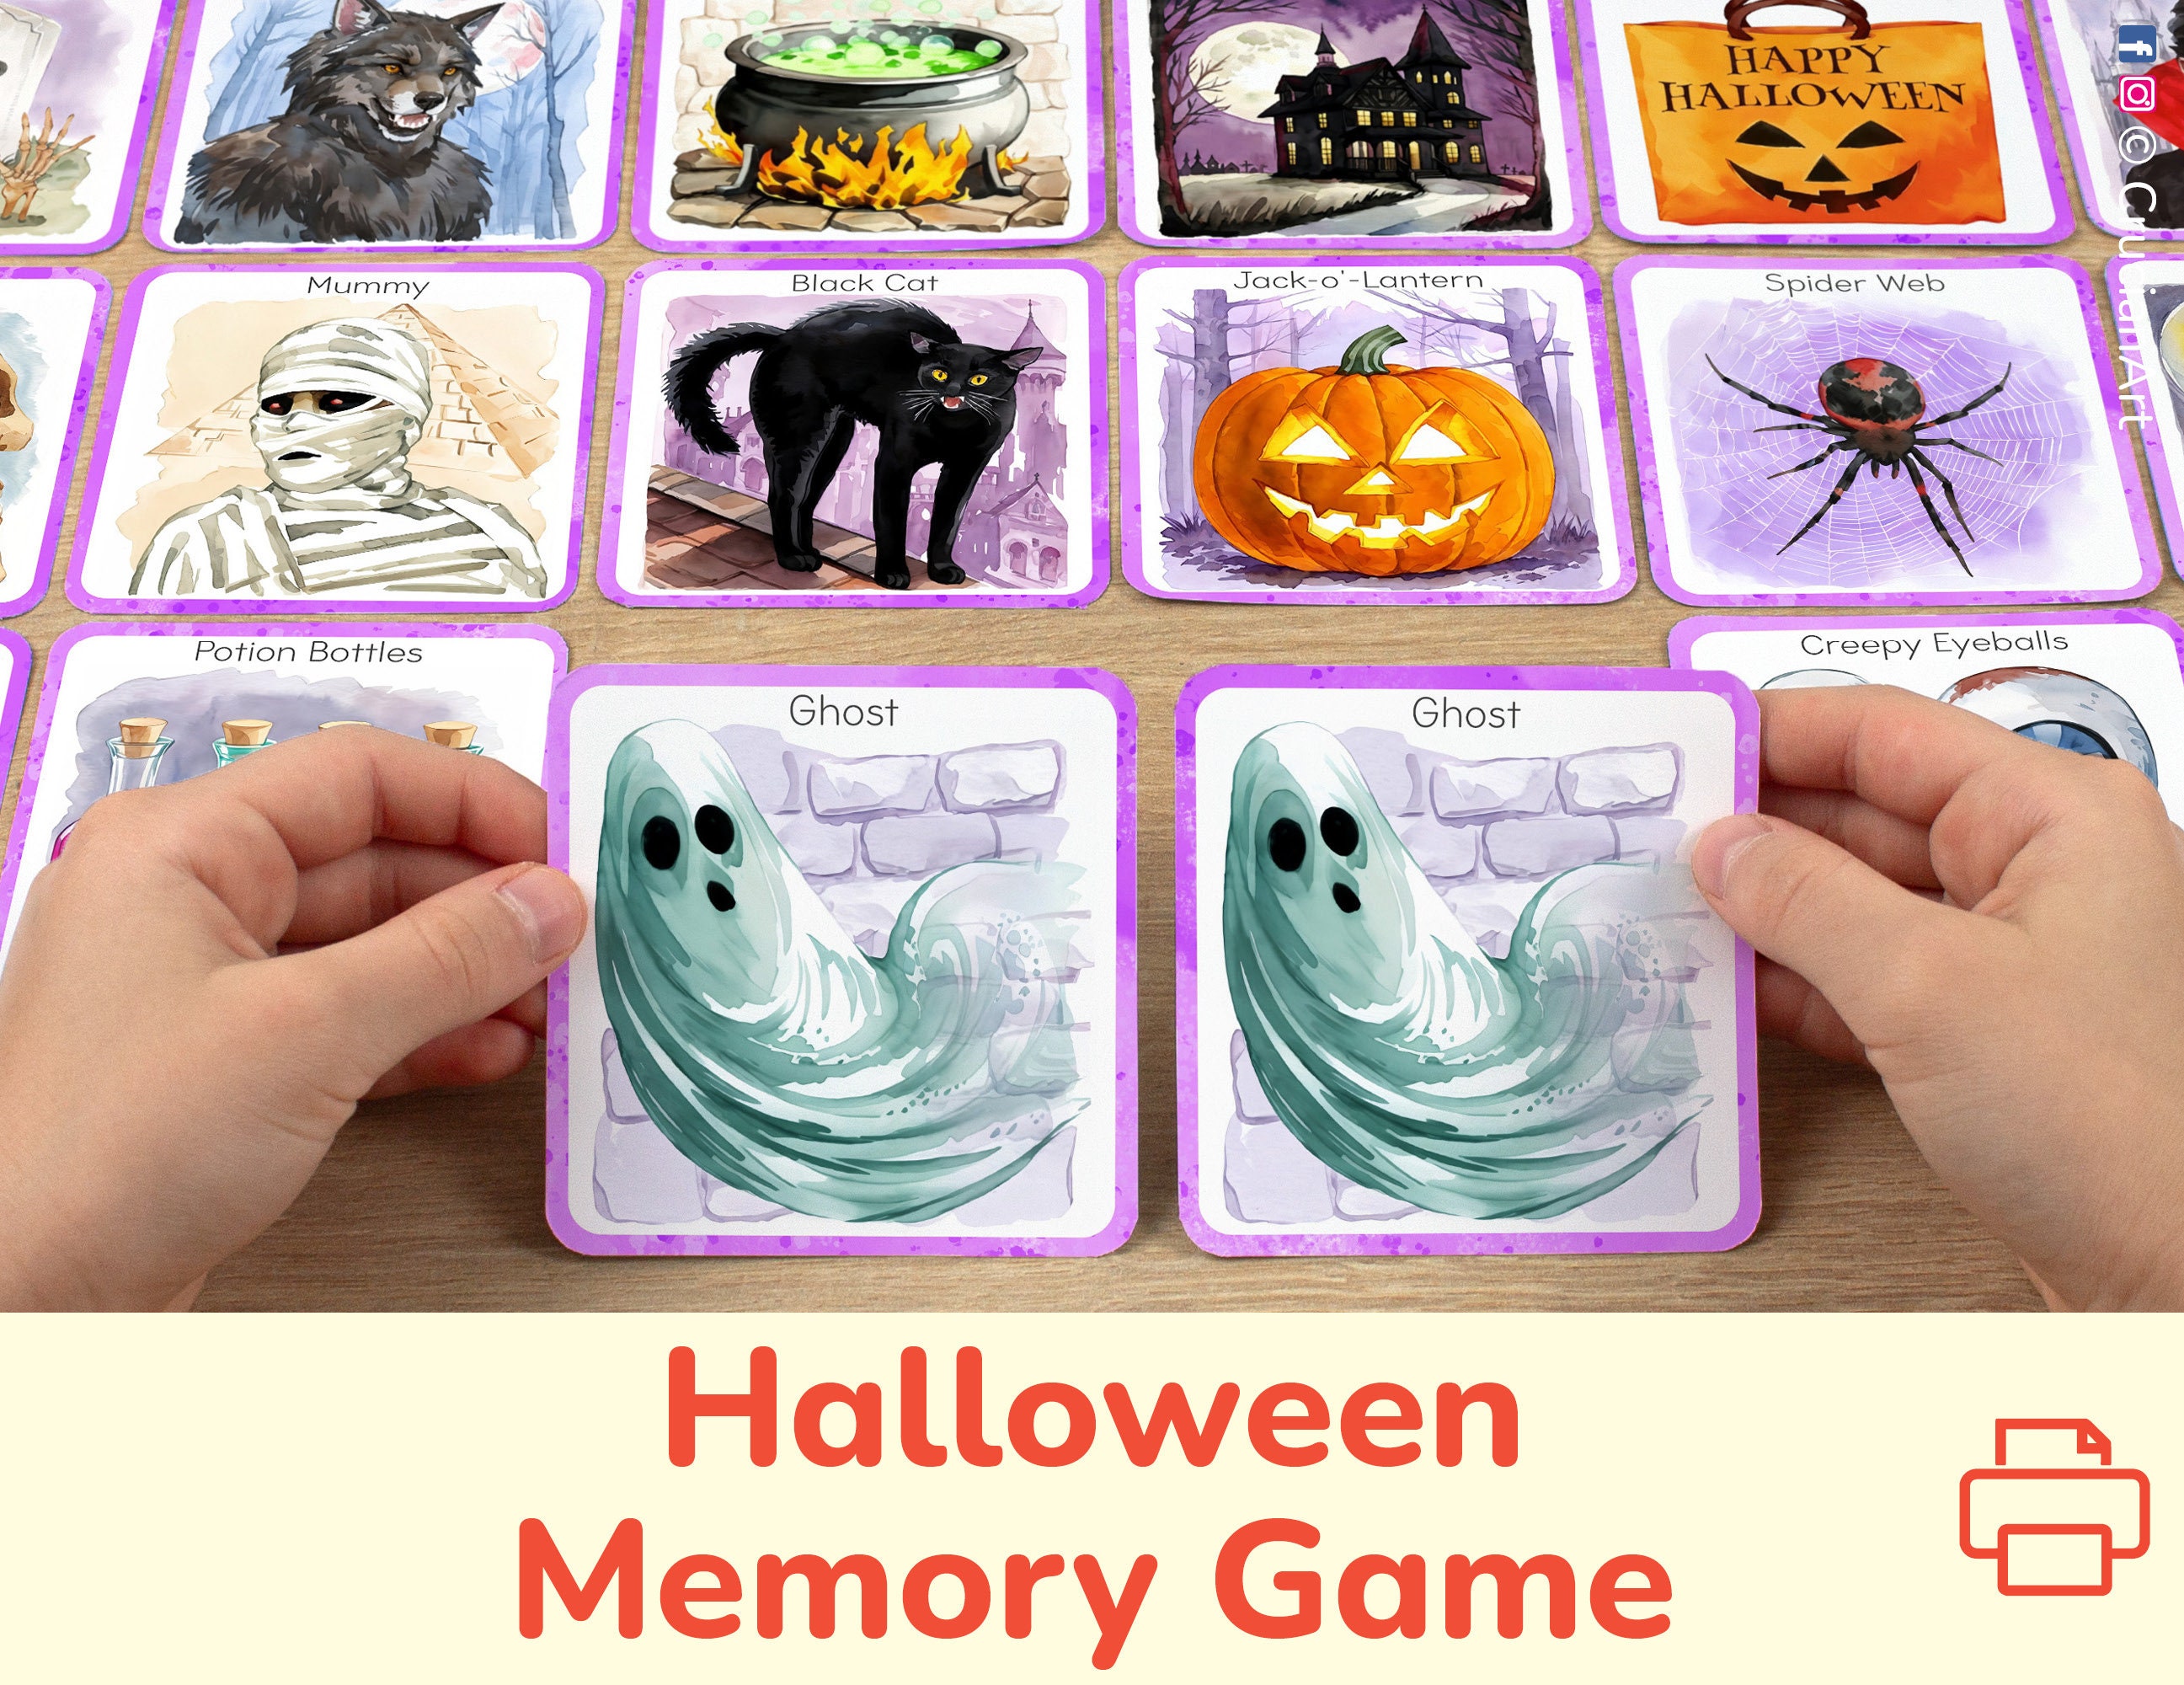 BIC Kids Memory Game Estojo de viagem: lápis, ceras, marcadores, 32 peças -  Cupões Tá Fixe